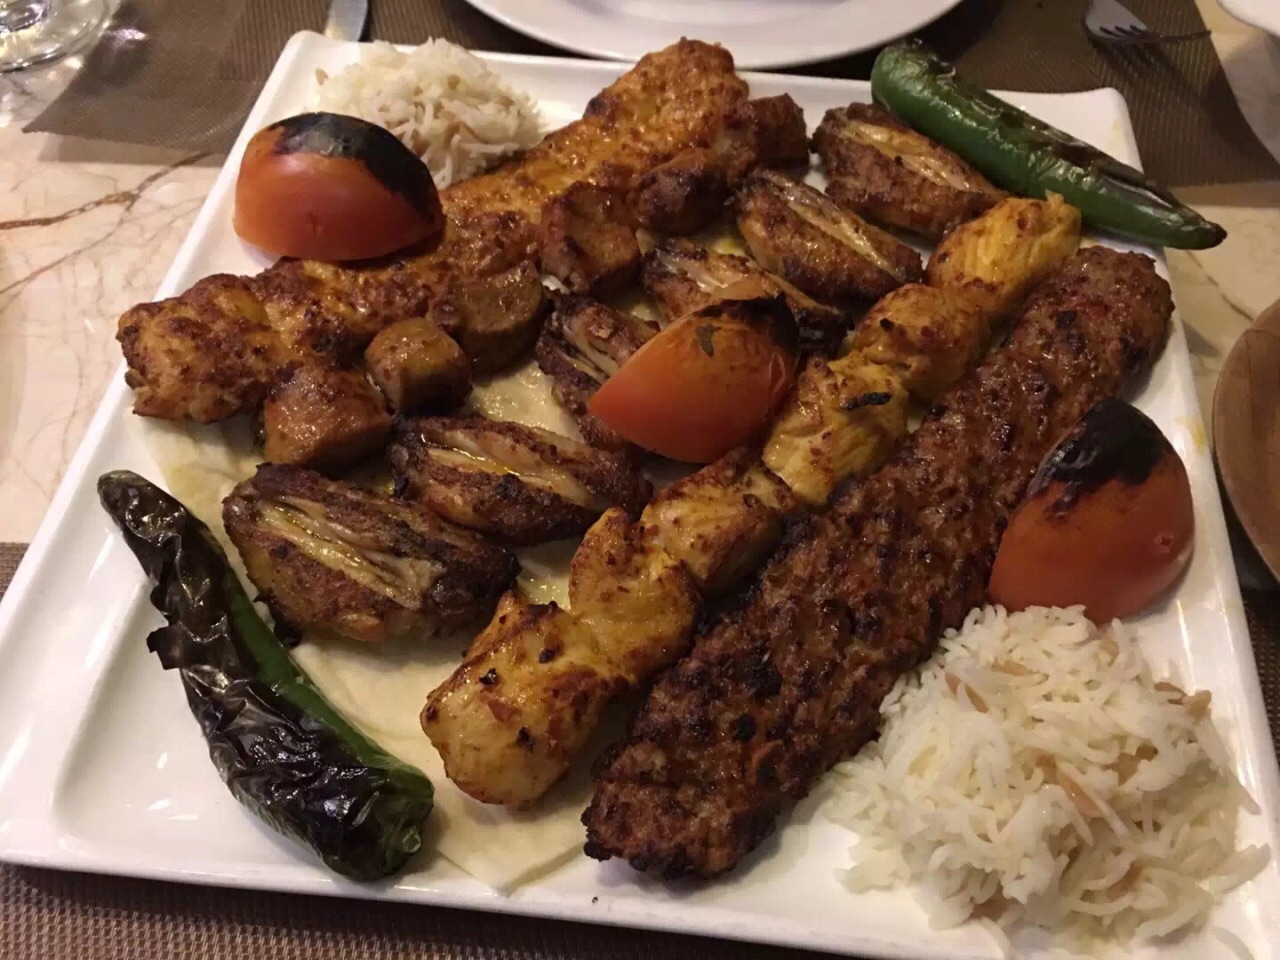 土耳其餐馆在晚上 图库摄影片. 图片 包括有 晚上, 游人, 人们, 经验, 运输, 旅行, 烹调, 相对地 - 97603207